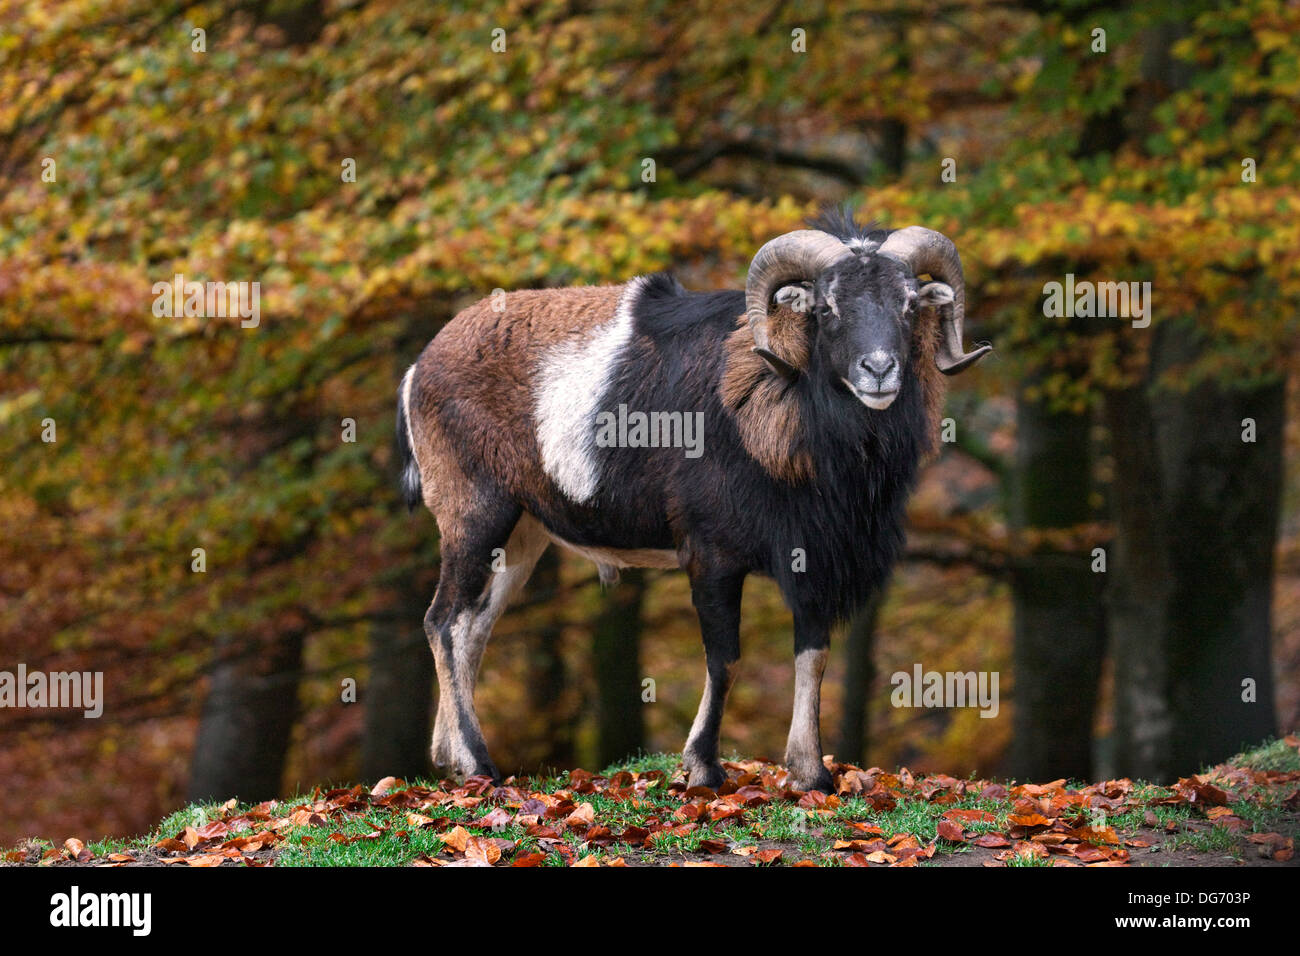 Mouflon (Ovis gmelini européenne / Ovis ammon musimon / Ovis orientalis musimon) ram en forêt en automne Banque D'Images